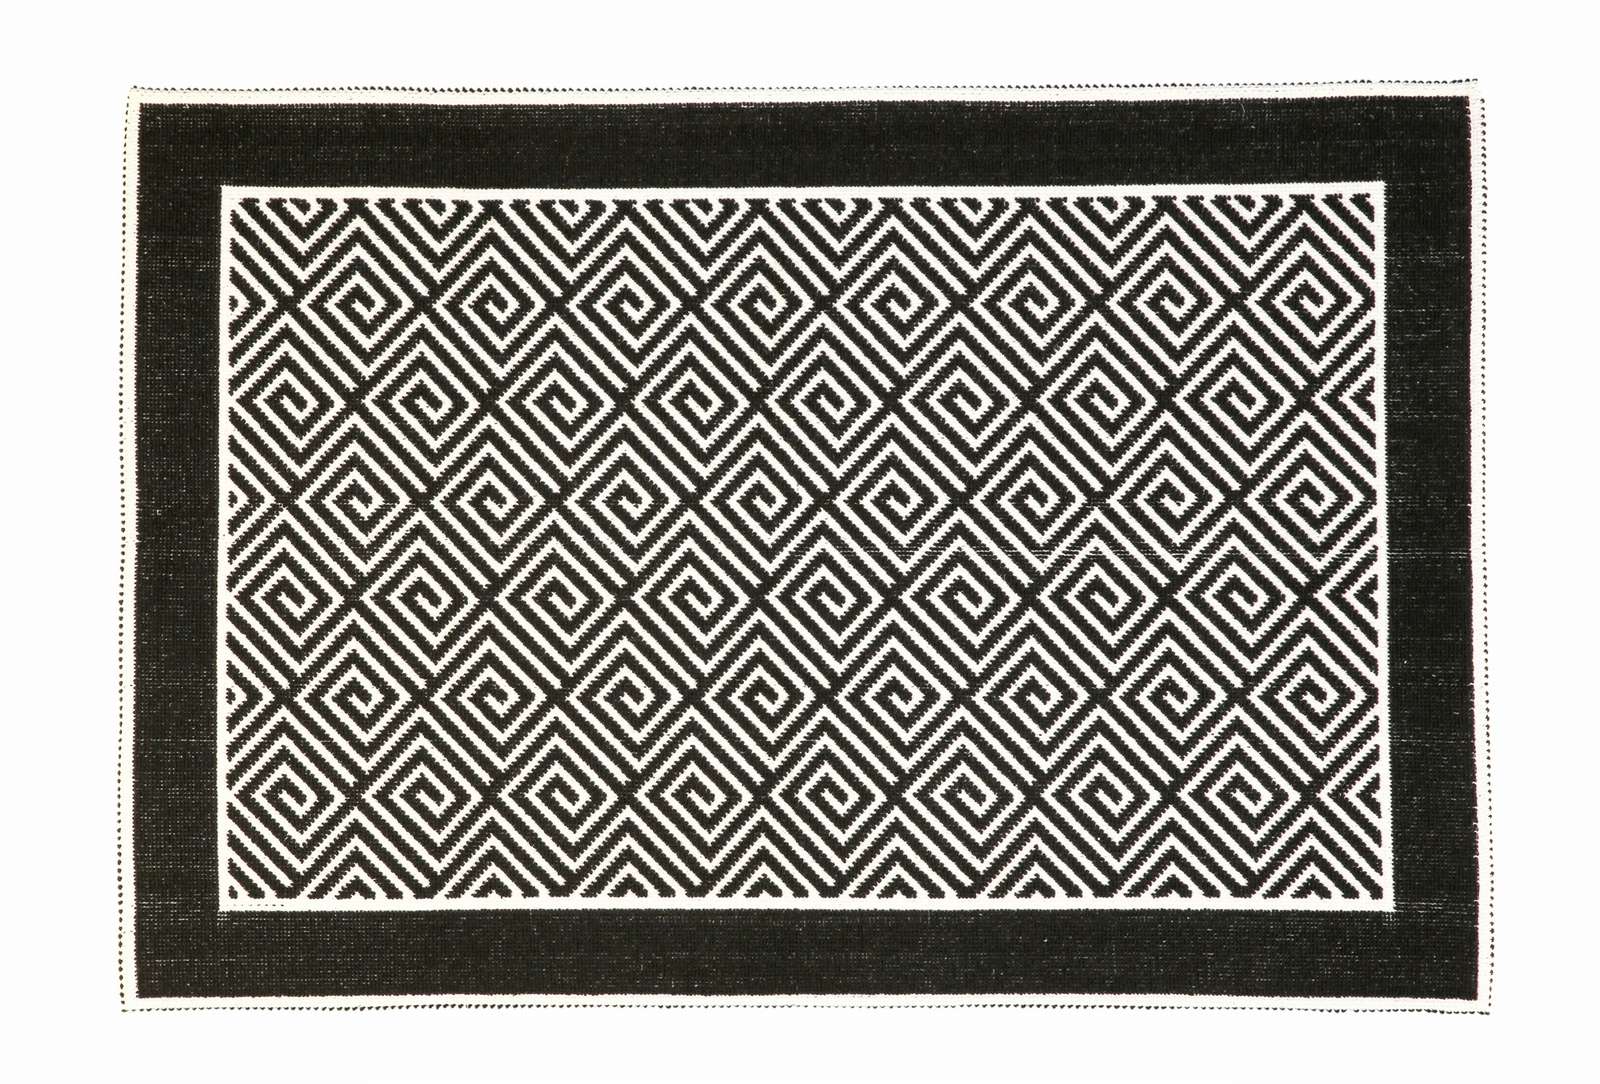 Ковер Alize Labirint, черный, Турция, палас на пол 120x180 см, хлопок